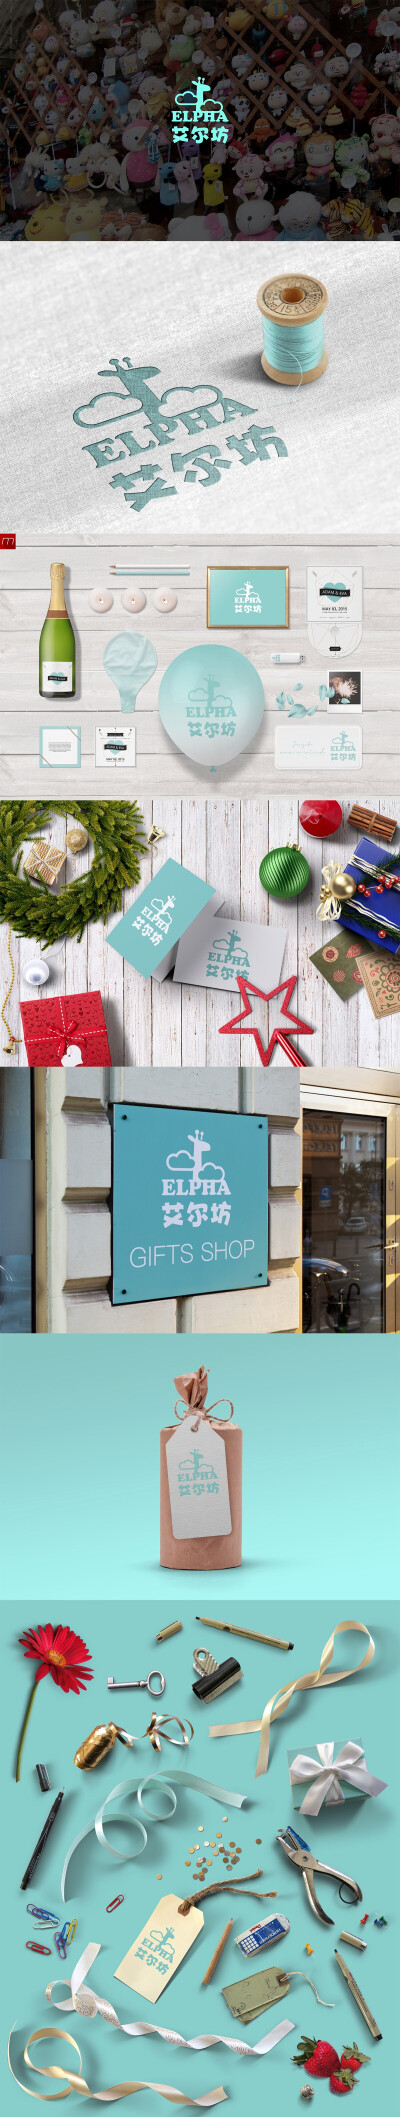 一家精致的礼品店logo设计，可爱+简约的设计风格，搭配淡淡的青绿色。【卯时设计作品】